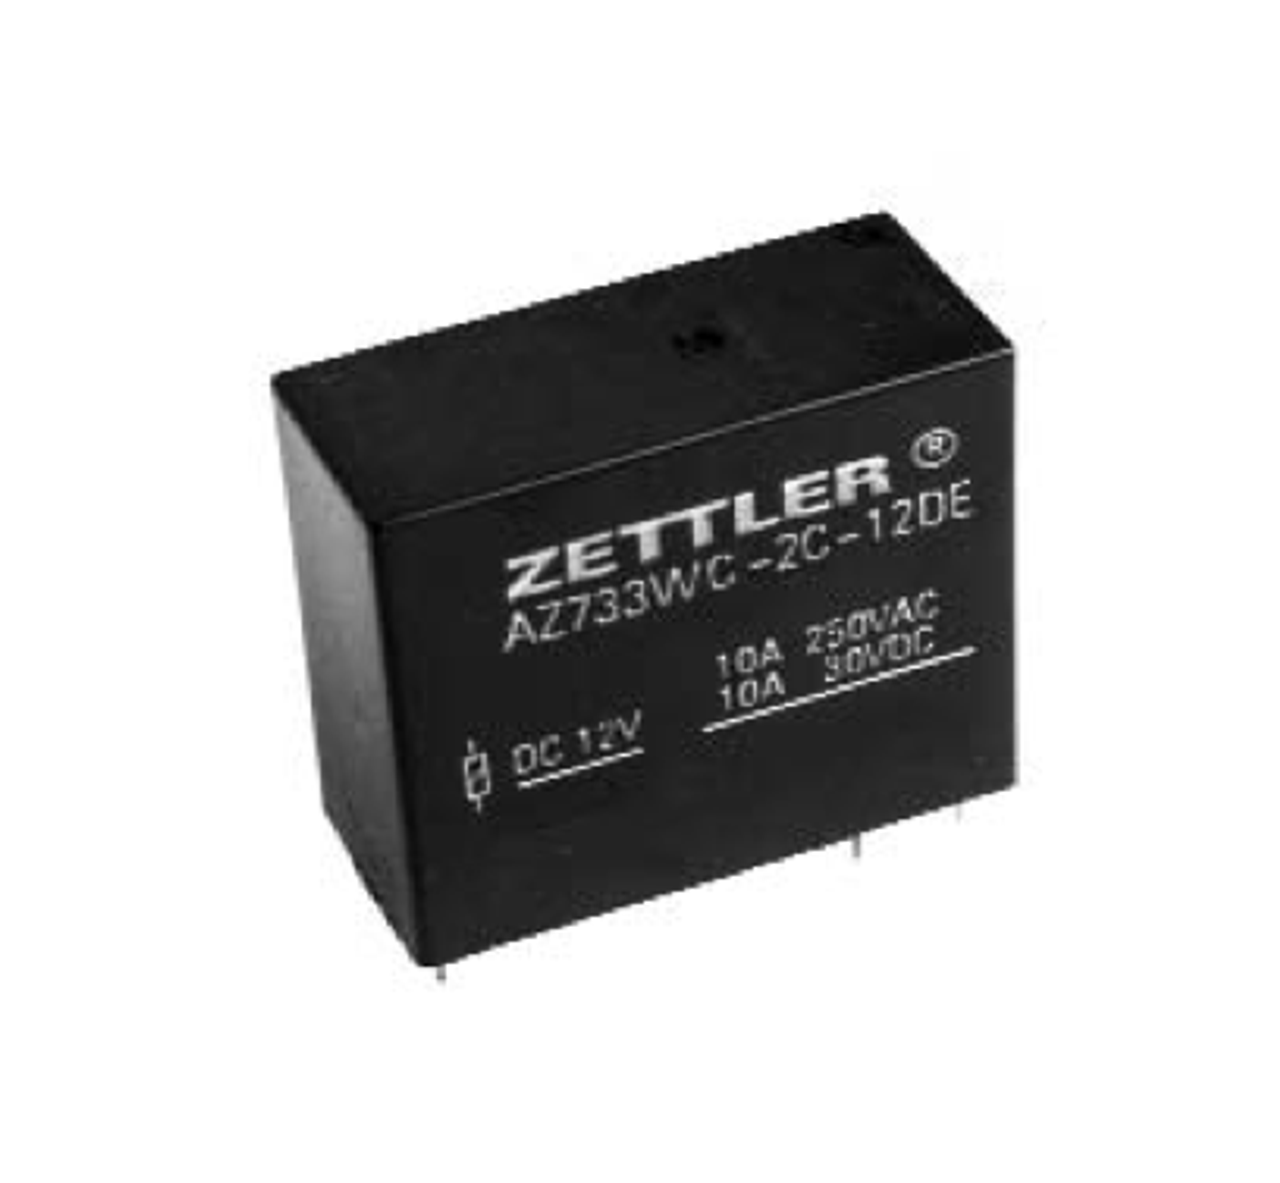 American Zettler AZ733WC-2C-24DE Power Relay